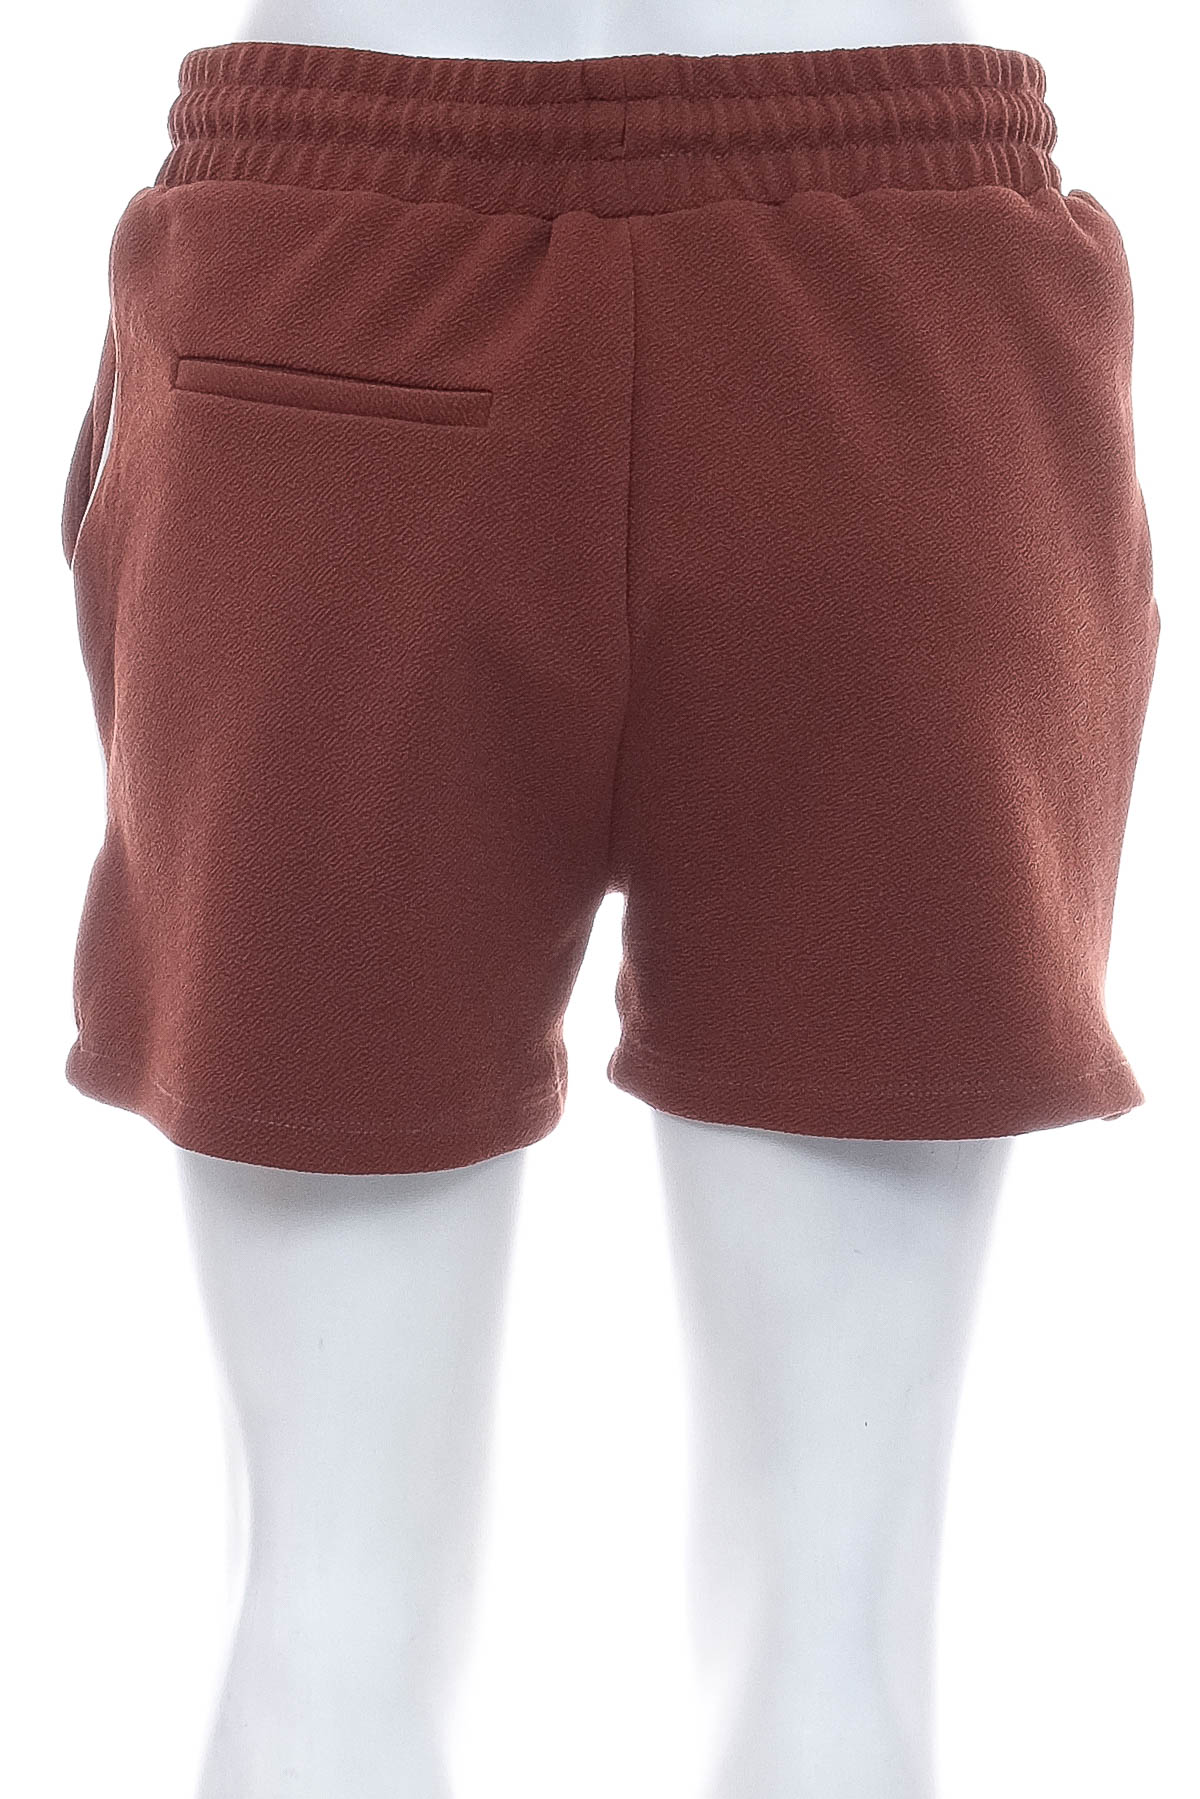 Female shorts - COLLOSEUM - 1